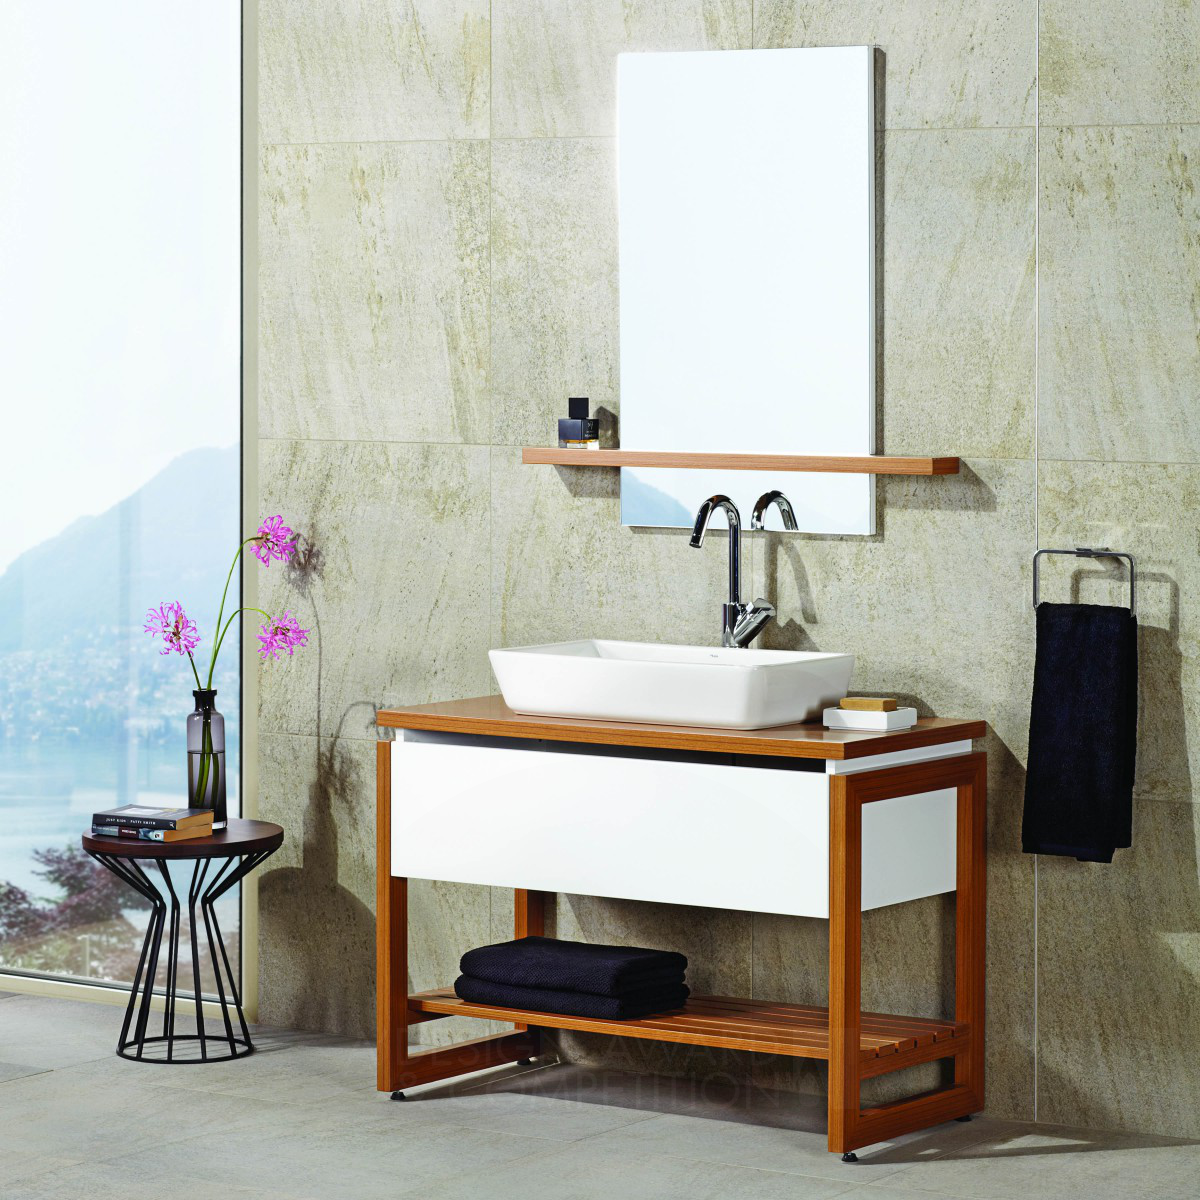 NORDIC <b>Bathroom Furniture Set &amp; Ceramic Tiling